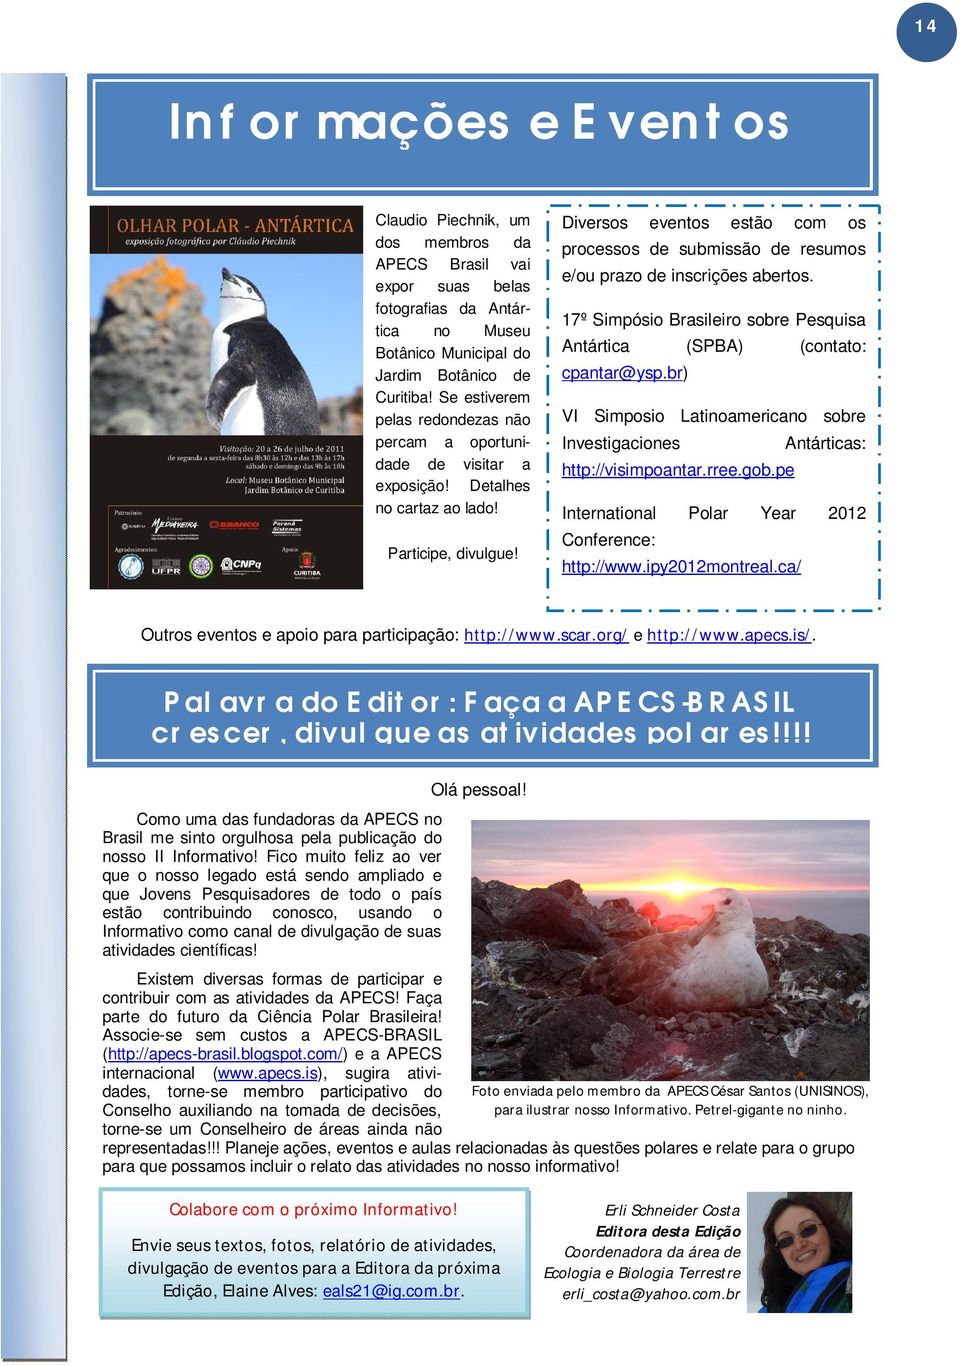 Diversos eventos estão com os processos de submissão de resumos e/ou prazo de inscrições abertos. 17º Simpósio Brasileiro sobre Pesquisa Antártica (SPBA) (contato: cpantar@ysp.